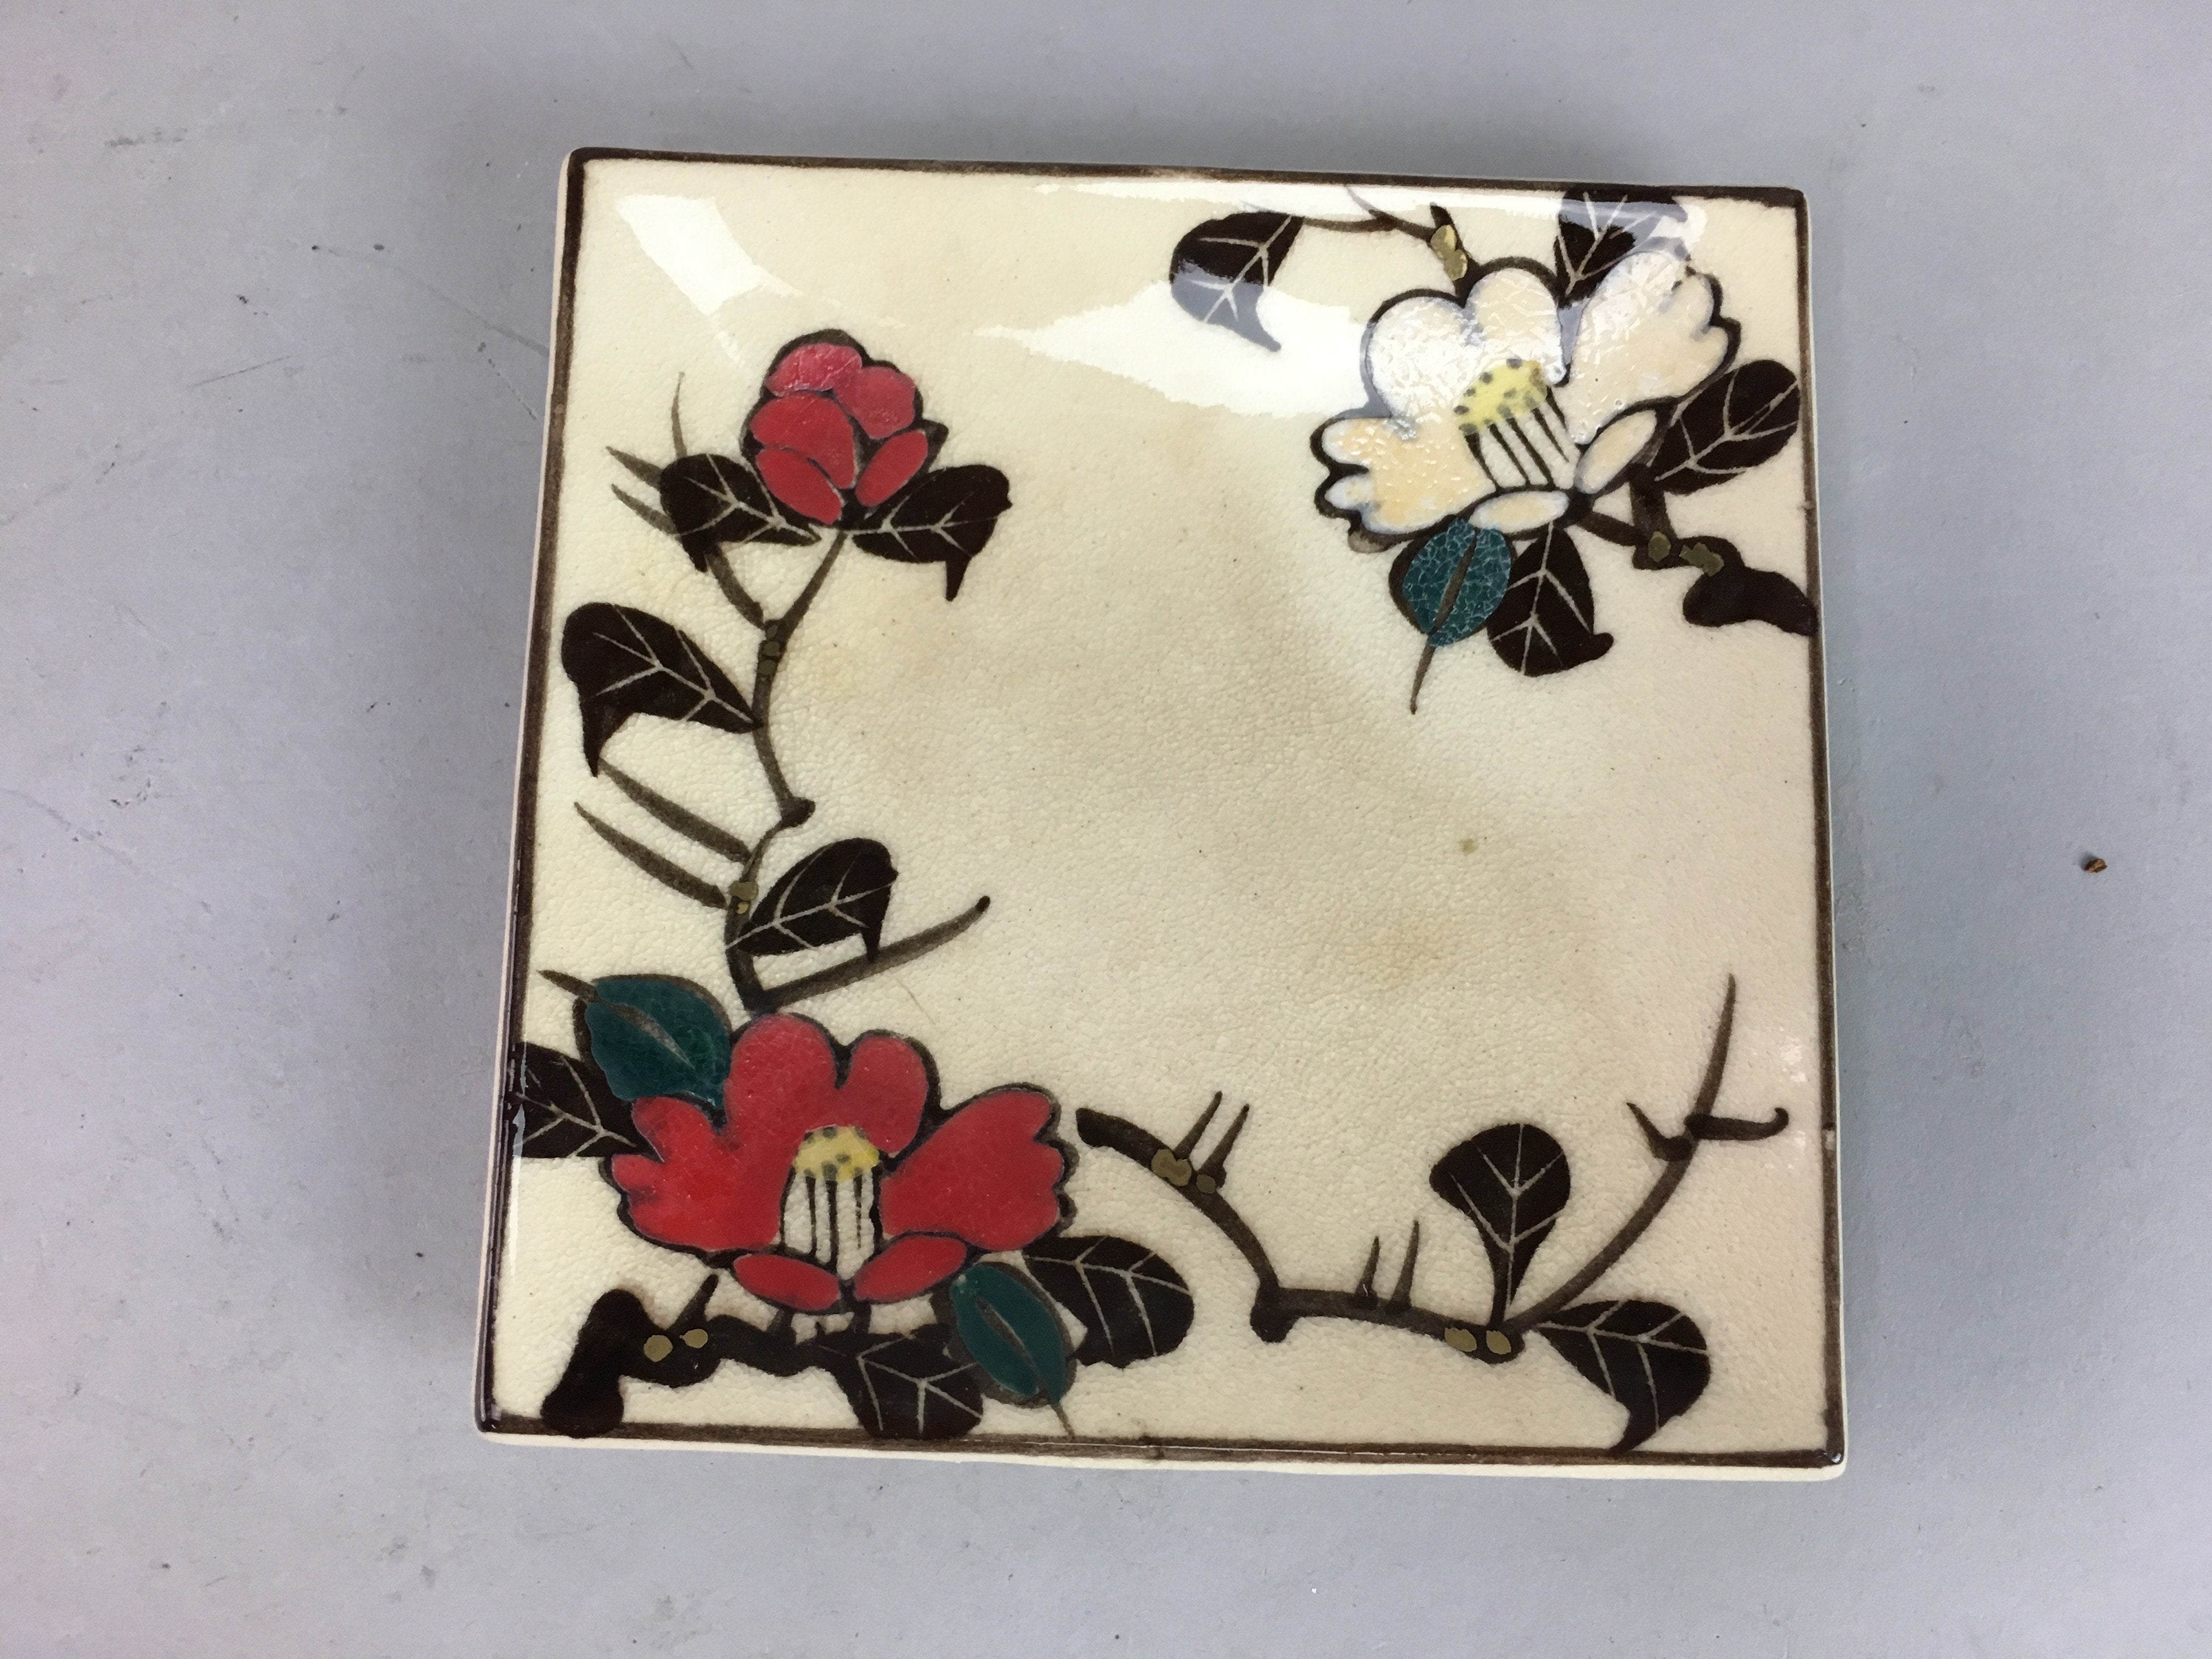 Japanese Ceramic Square Plate Vtg Pottery Floral Design Beige Sushi PT97